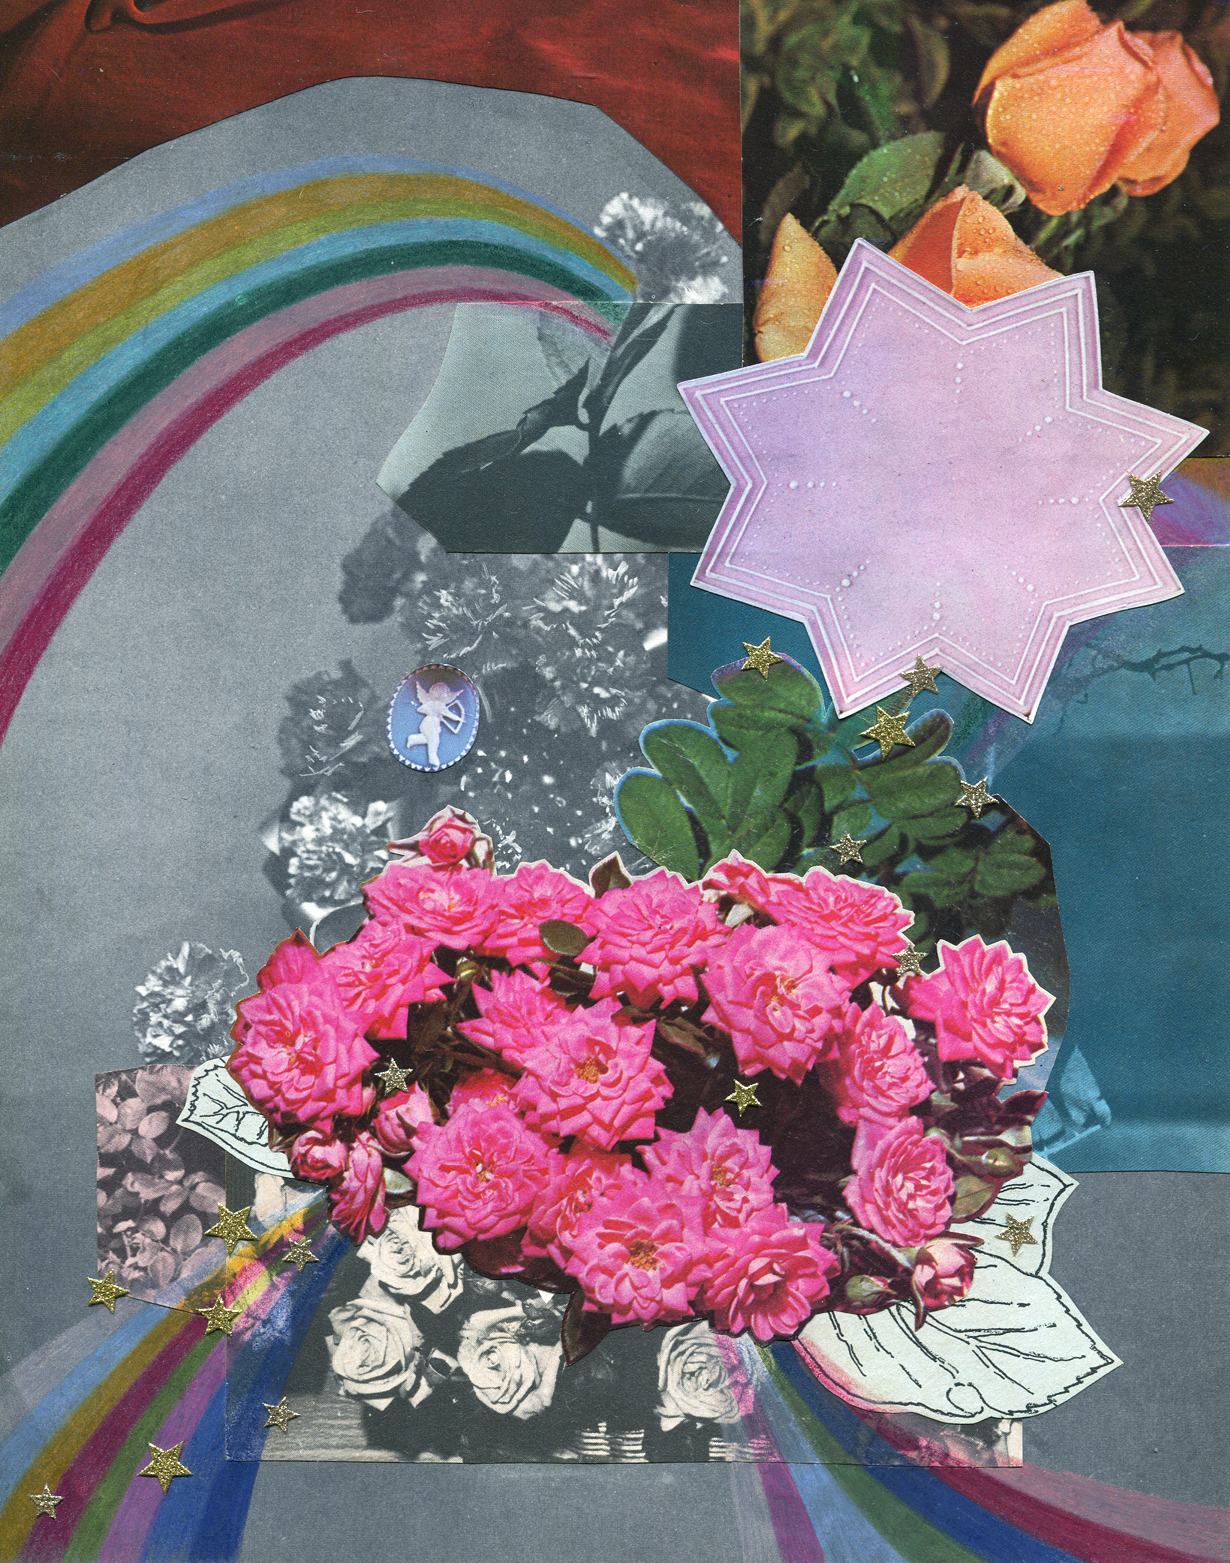 Rainbow Rose Garden #3, collage, found paper, pencil